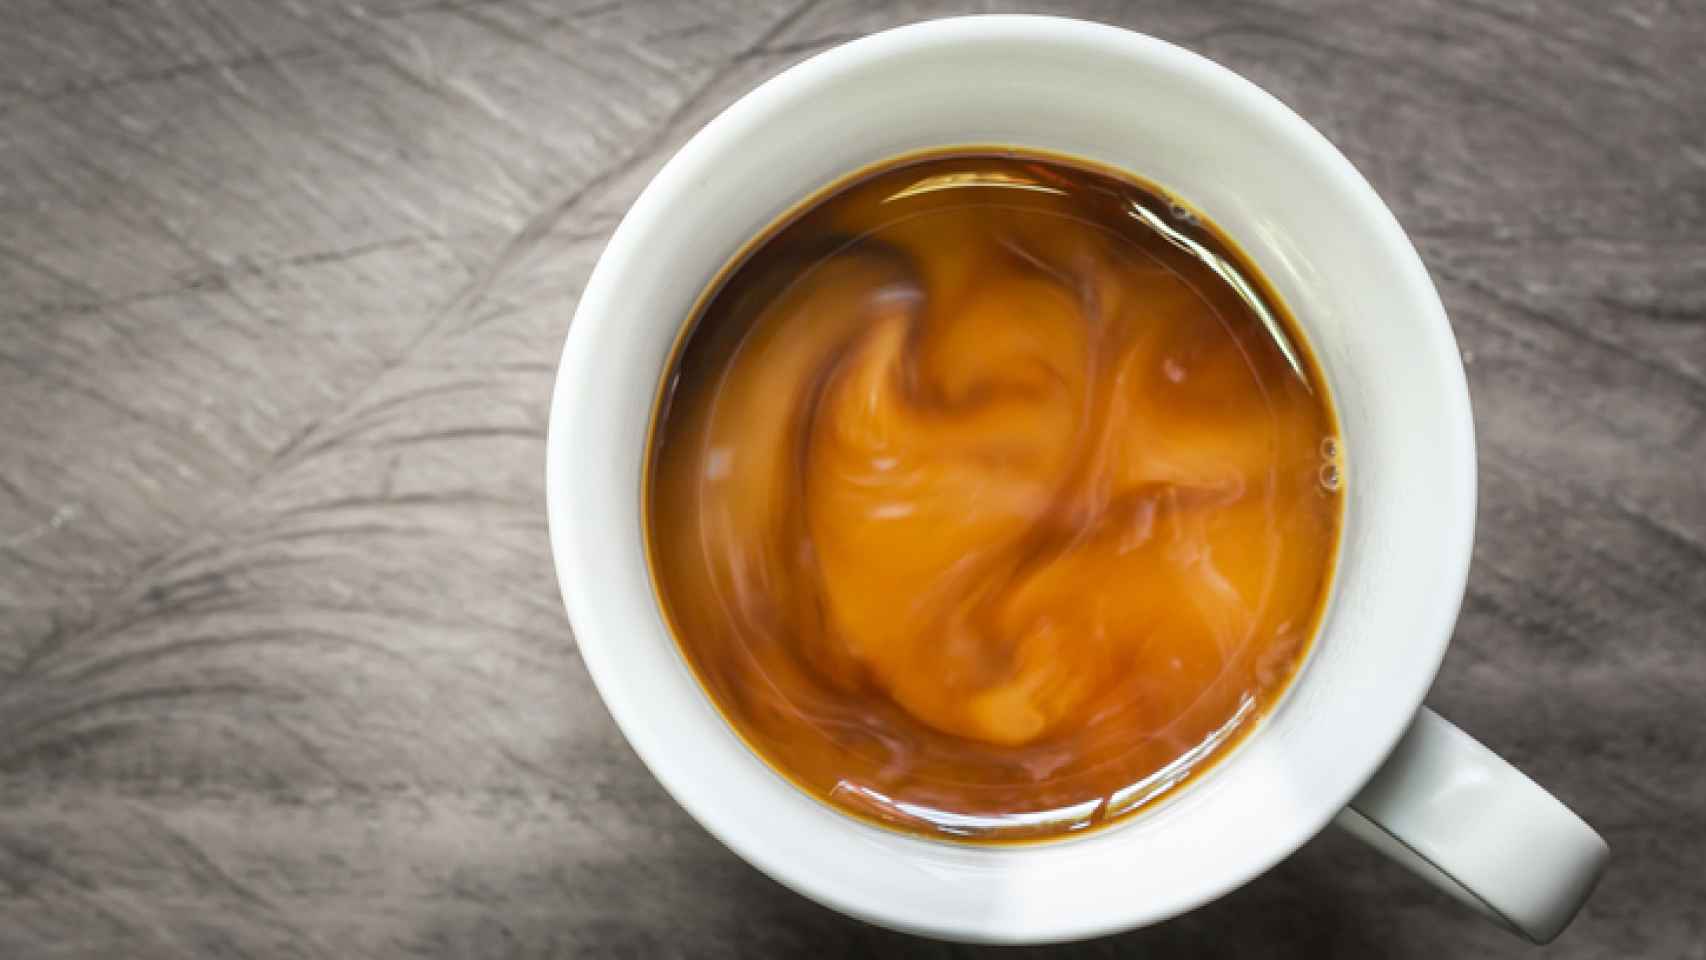 El molido del café según tu método - RANCH